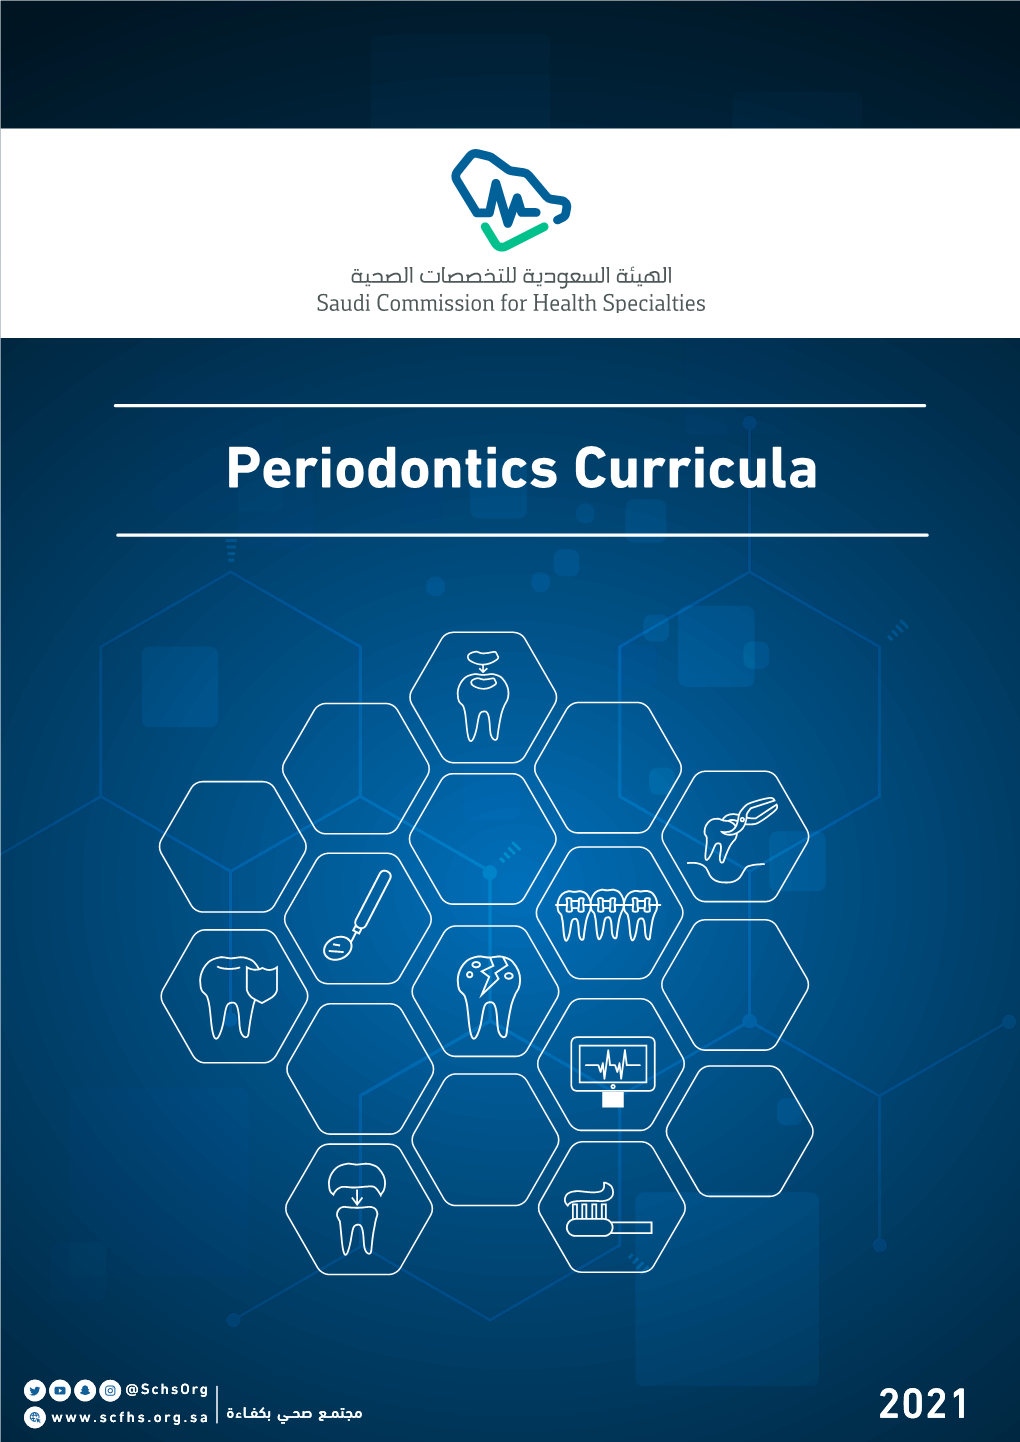 Periodontics Curricula